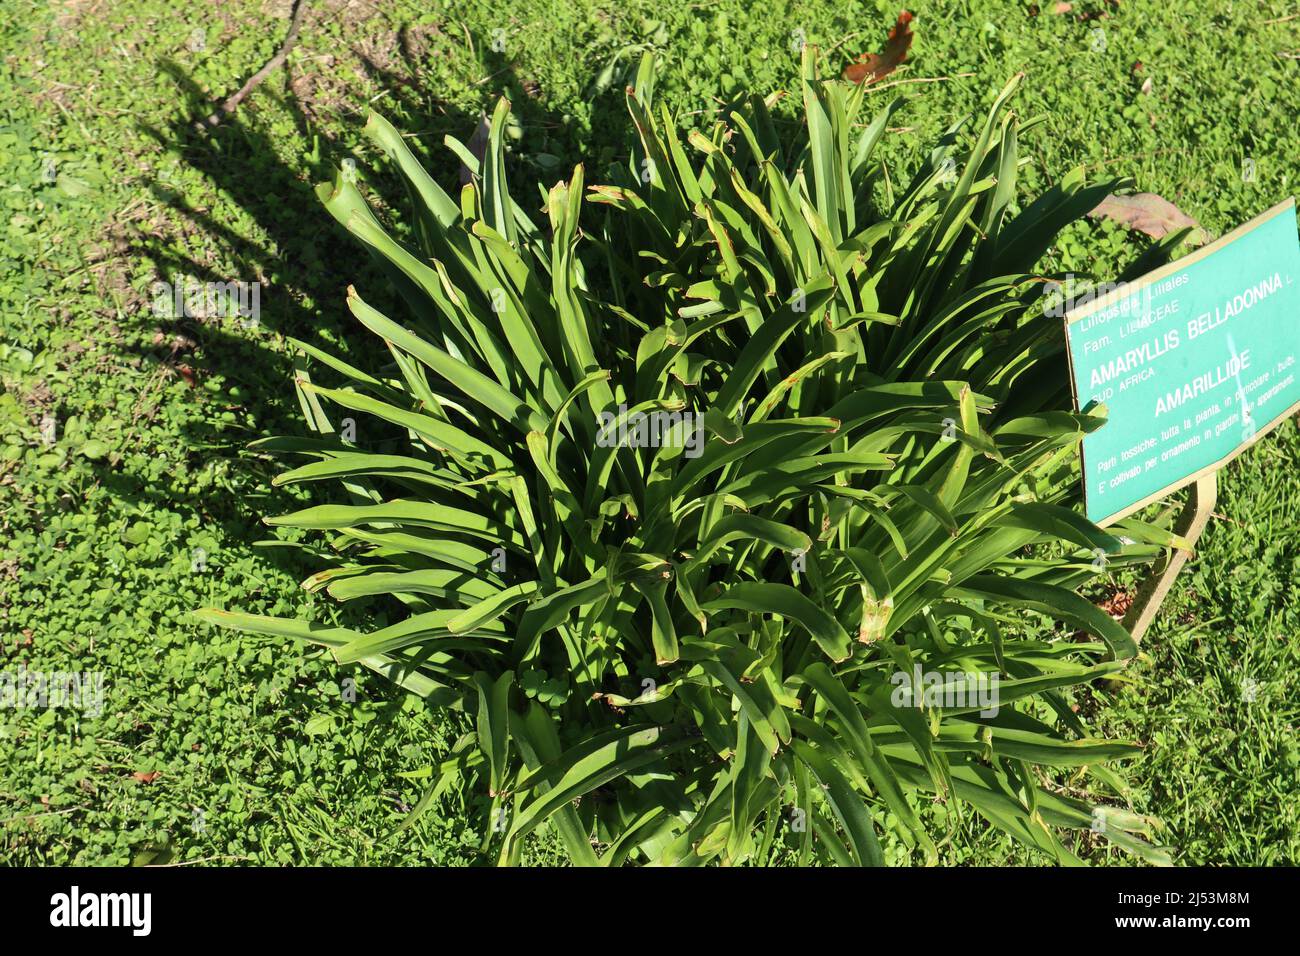 Napoli - Pianta di Amaryllis Belladonna nell'Orto Botanico Stock Photo